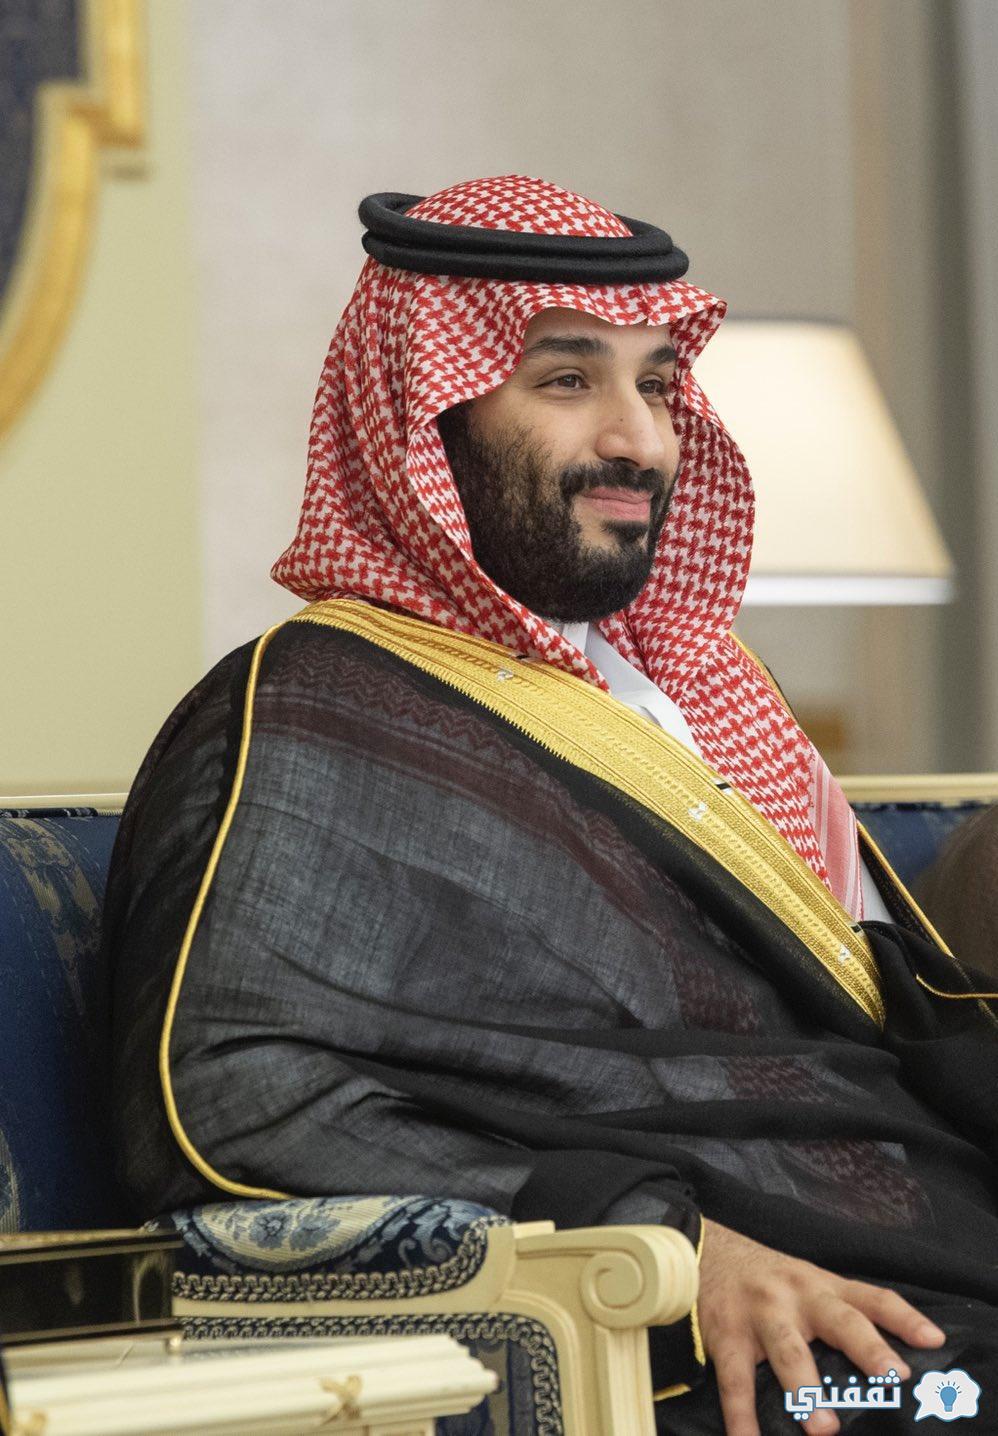 "اتصالات المملكة" كيف أرسل برقية إلى الأمير محمد بن سلمان "تواصل" طلب مساعدة ولي العهد